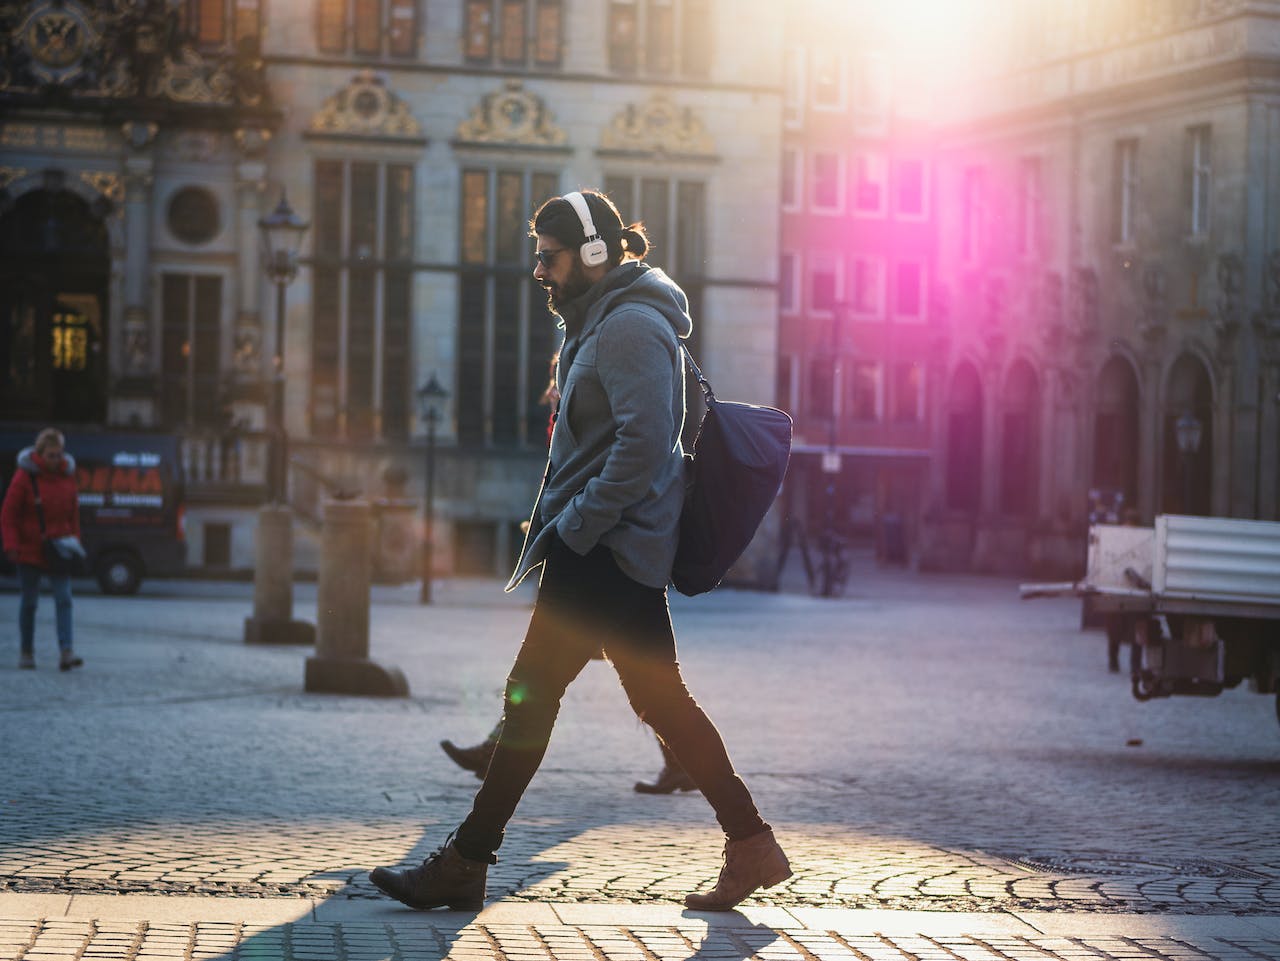 A man wearing headphones walks down a city street